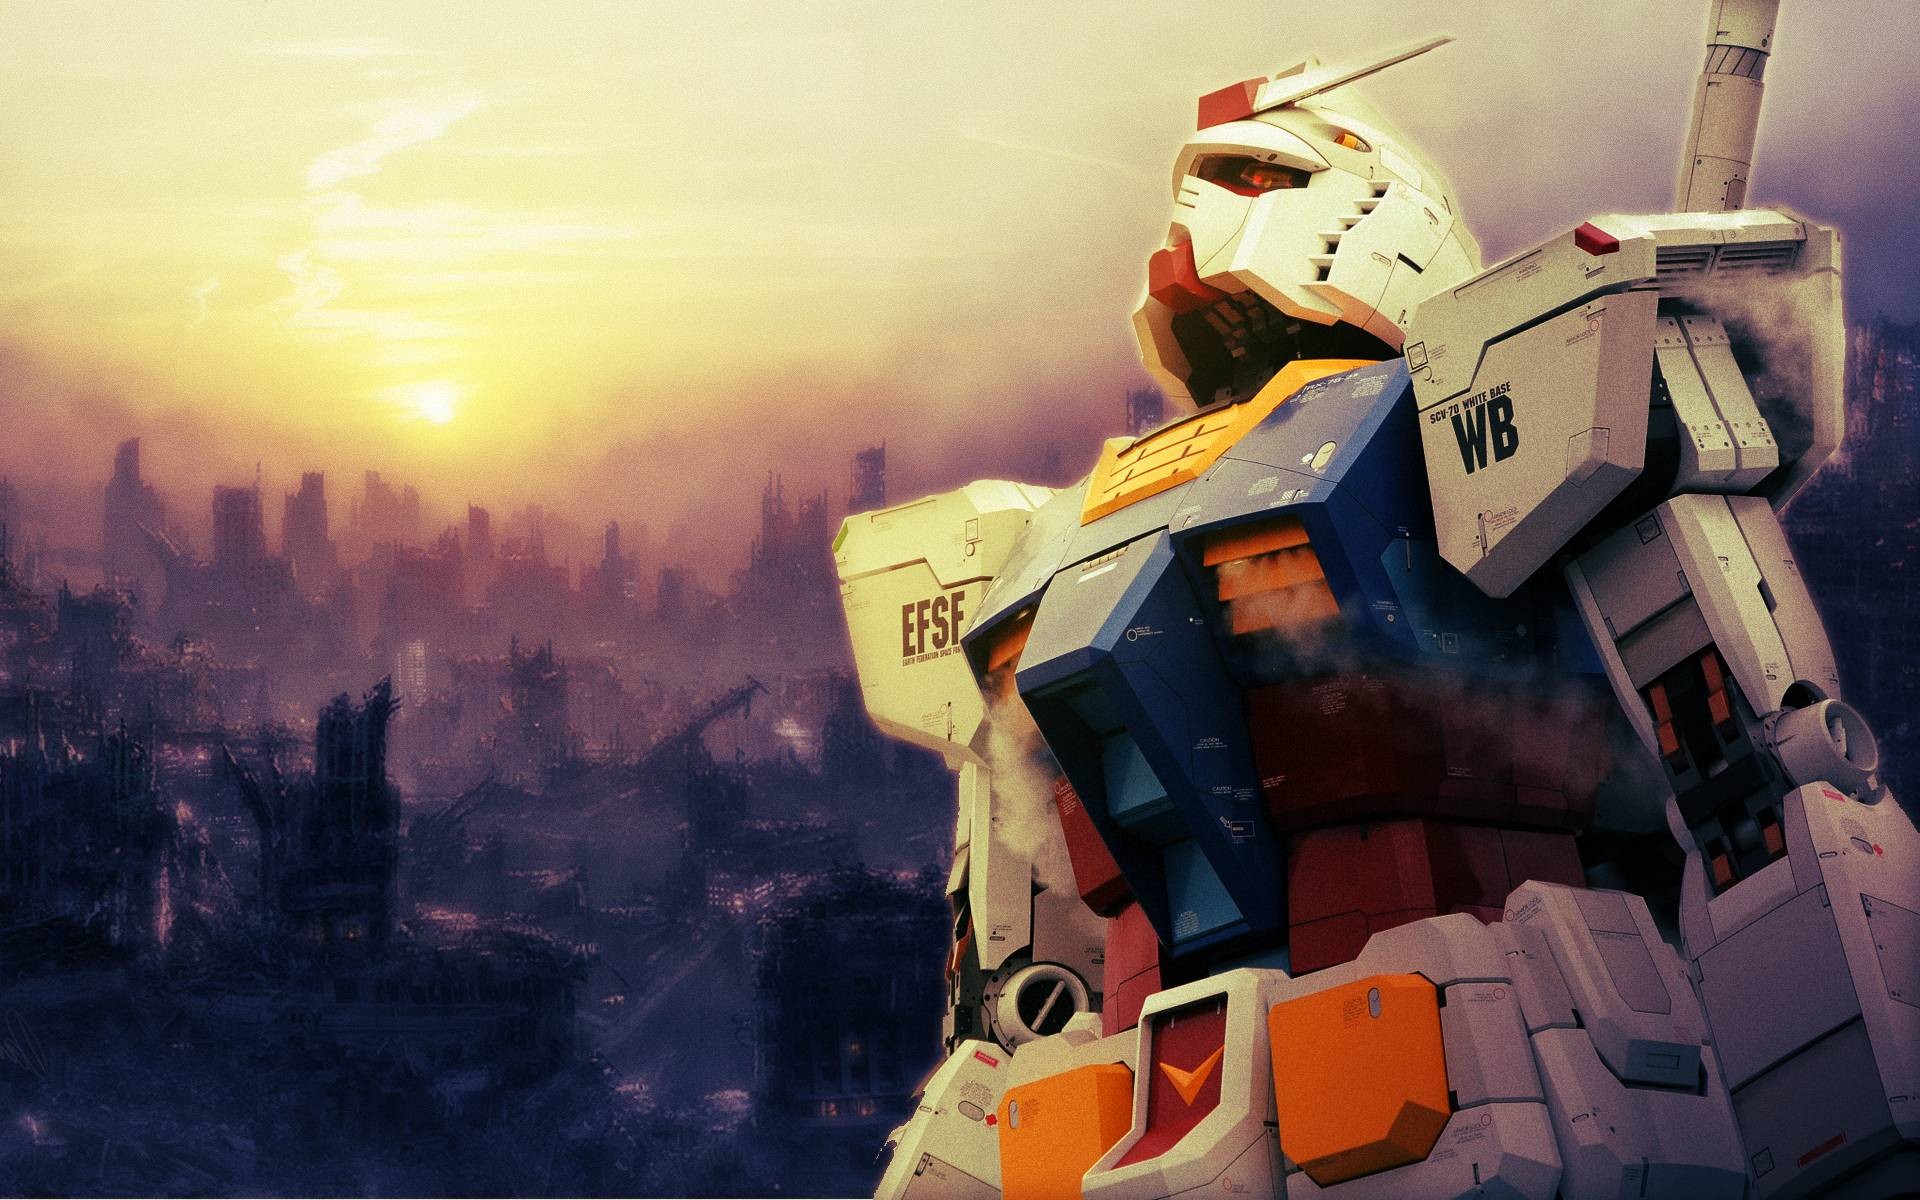 Gundam wallpaper ·① Download free beautiful wallpapers for desktop